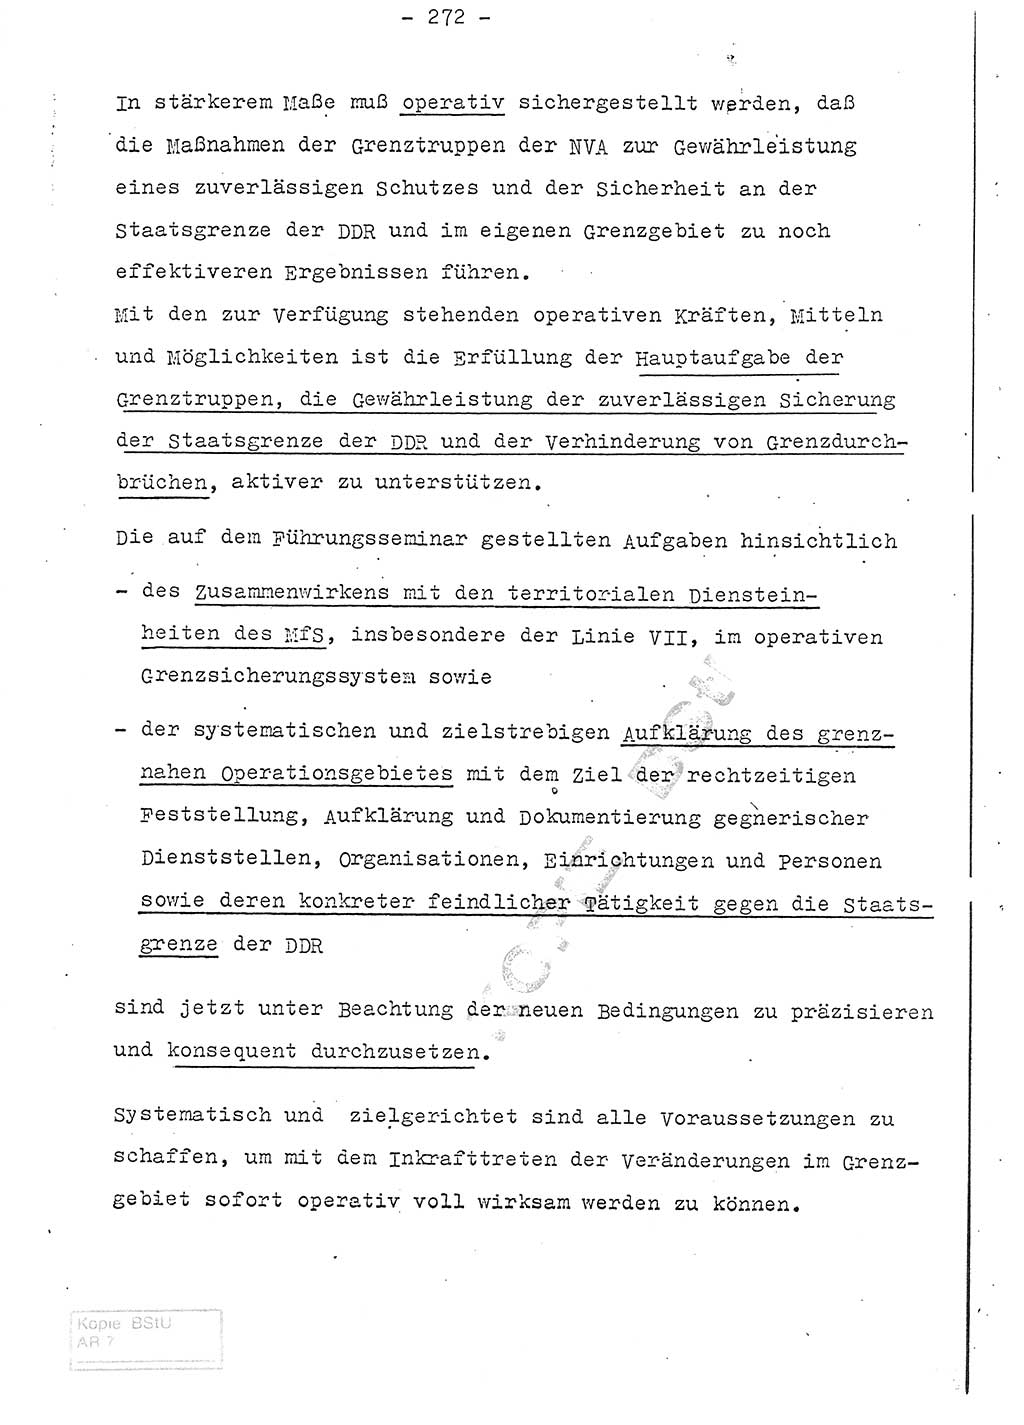 Referat (Entwurf) des Genossen Minister (Generaloberst Erich Mielke) auf der Dienstkonferenz 1972, Ministerium für Staatssicherheit (MfS) [Deutsche Demokratische Republik (DDR)], Der Minister, Geheime Verschlußsache (GVS) 008-150/72, Berlin 25.2.1972, Seite 272 (Ref. Entw. DK MfS DDR Min. GVS 008-150/72 1972, S. 272)